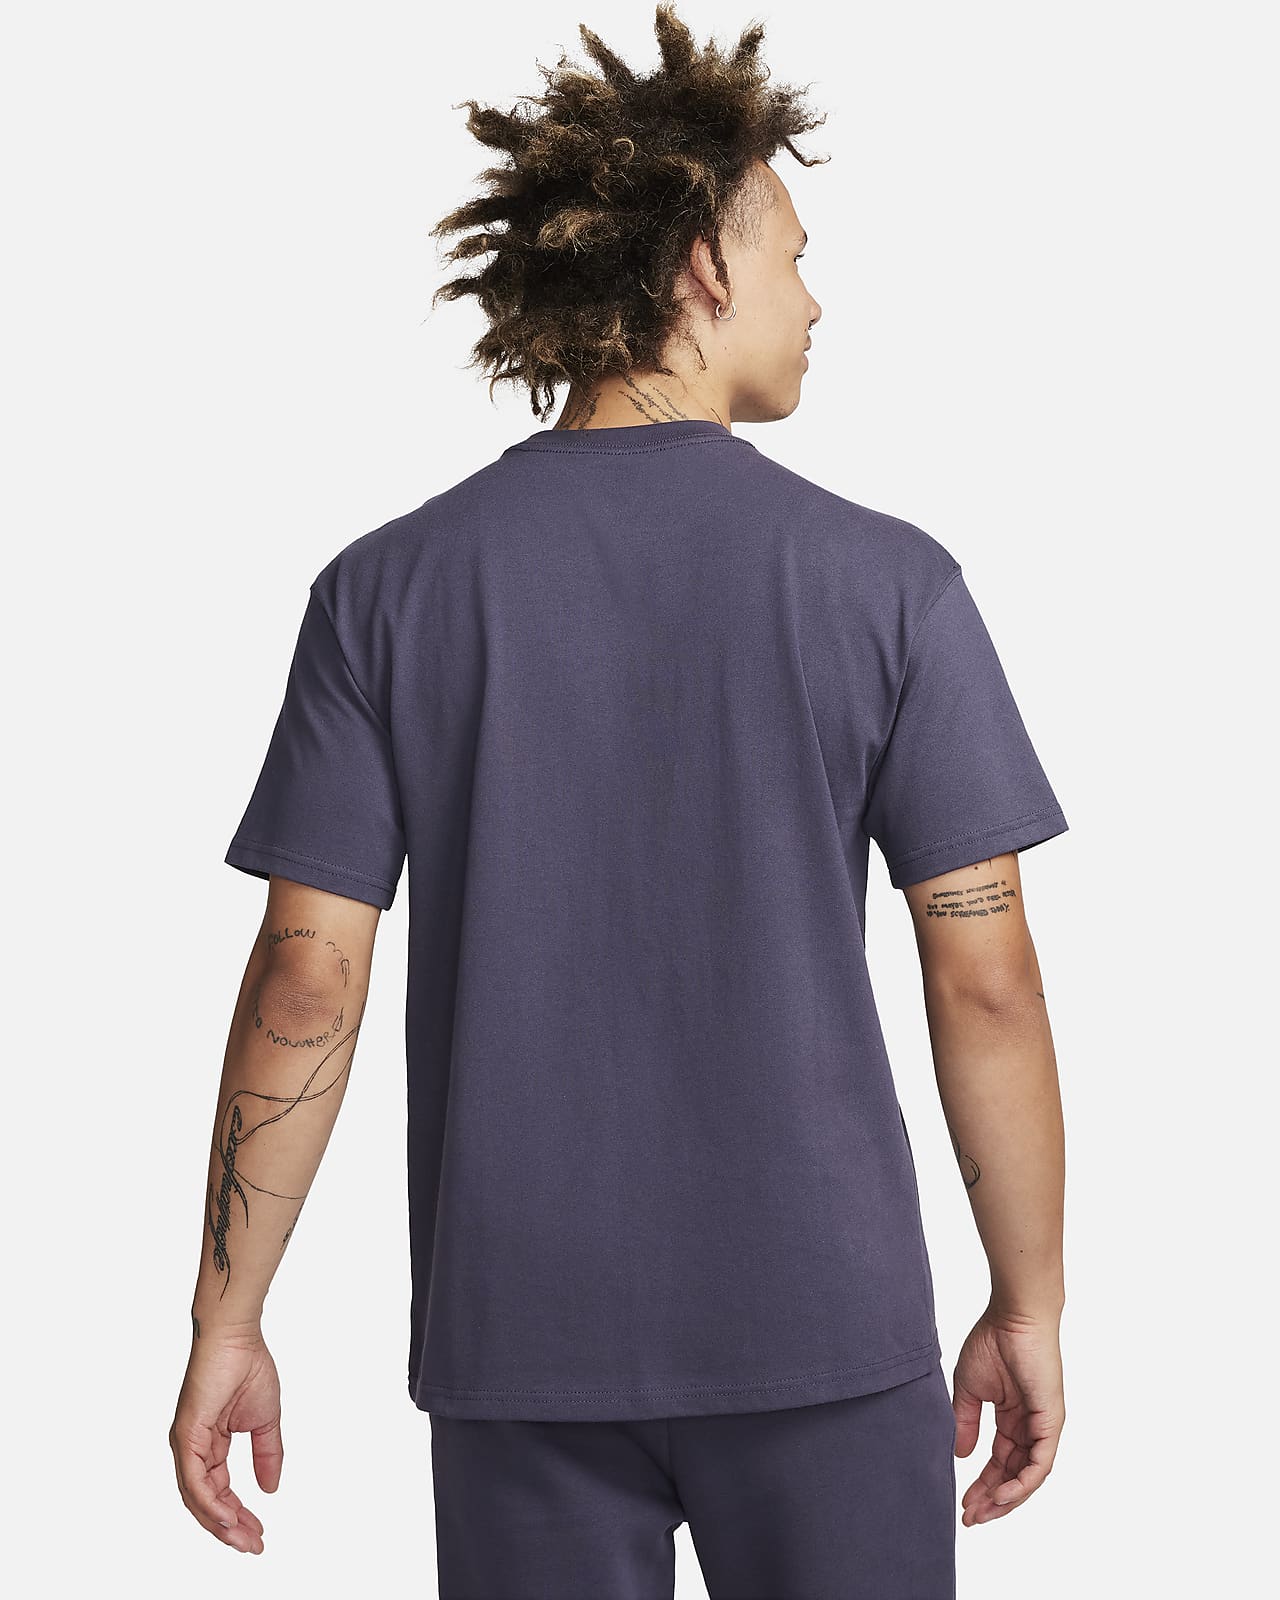 Nike Premium Essentials unisex oversized t-shirt in black